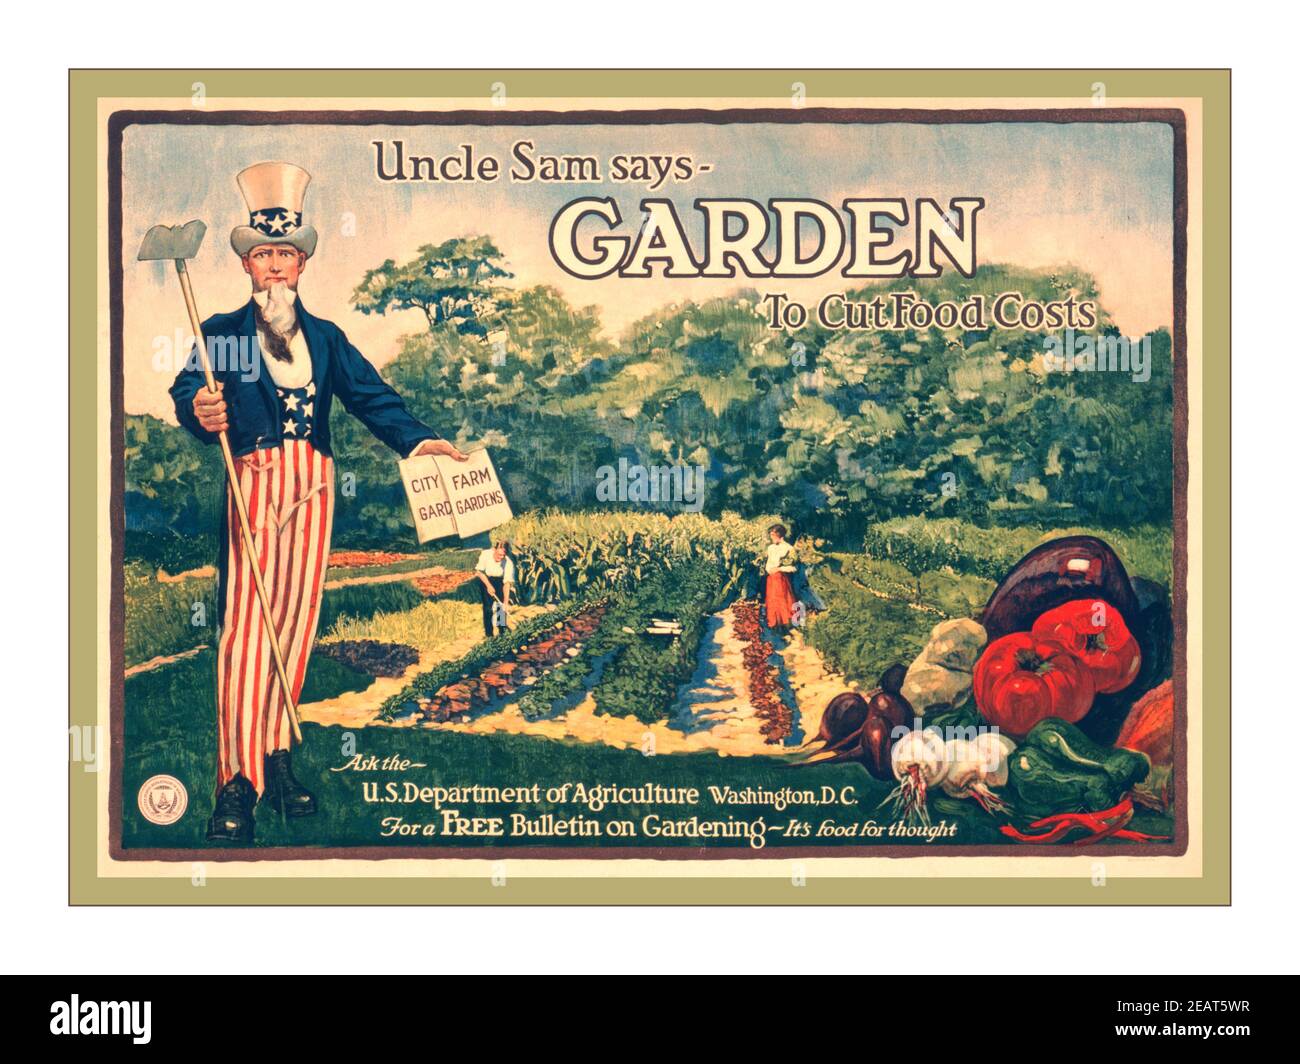 Vintage USA affiche de la première Guerre mondiale sur l'agriculture alimentaire "Uncle Sam Says - Garden to cut food coms". Contactez le département américain de l'Agriculture, Washington, D.C. pour un bulletin gratuit sur le jardinage - c'est de la nourriture pour la pensée / / A. Hoen & Co., Baltimore.: [1917] (affiche) : lithographie, couleur ; Résumé: Affiche montrant un homme et une femme qui s'occupent d'un jardin potager, avec l'oncle Sam et un arrangement de légumes au premier plan. Banque D'Images